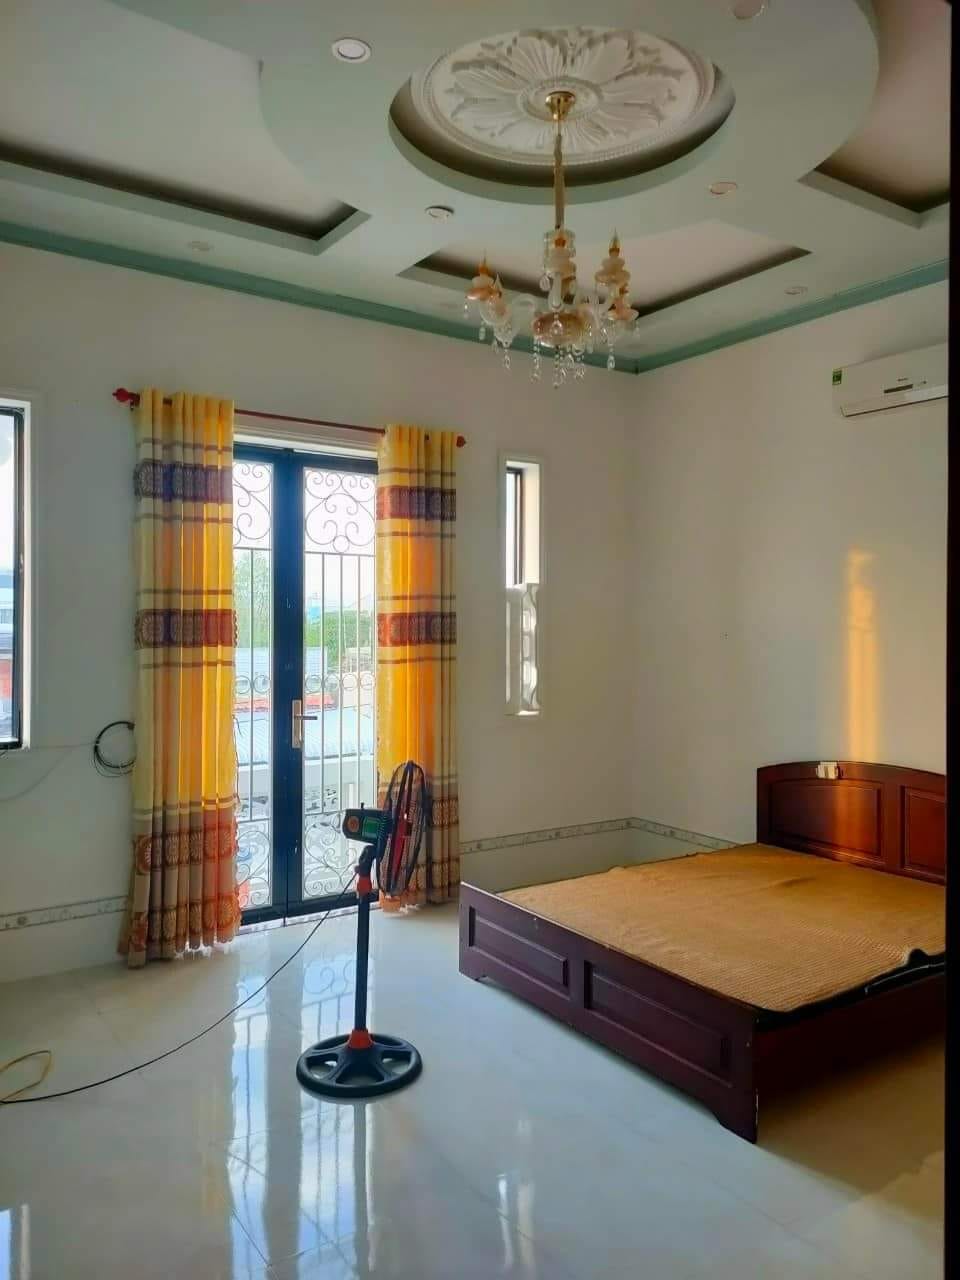 Kẹt tiền bán nhà trên đường Nguyễn Thị Lắng, diện tích 123m2 giá 740 triệu - Ảnh 1